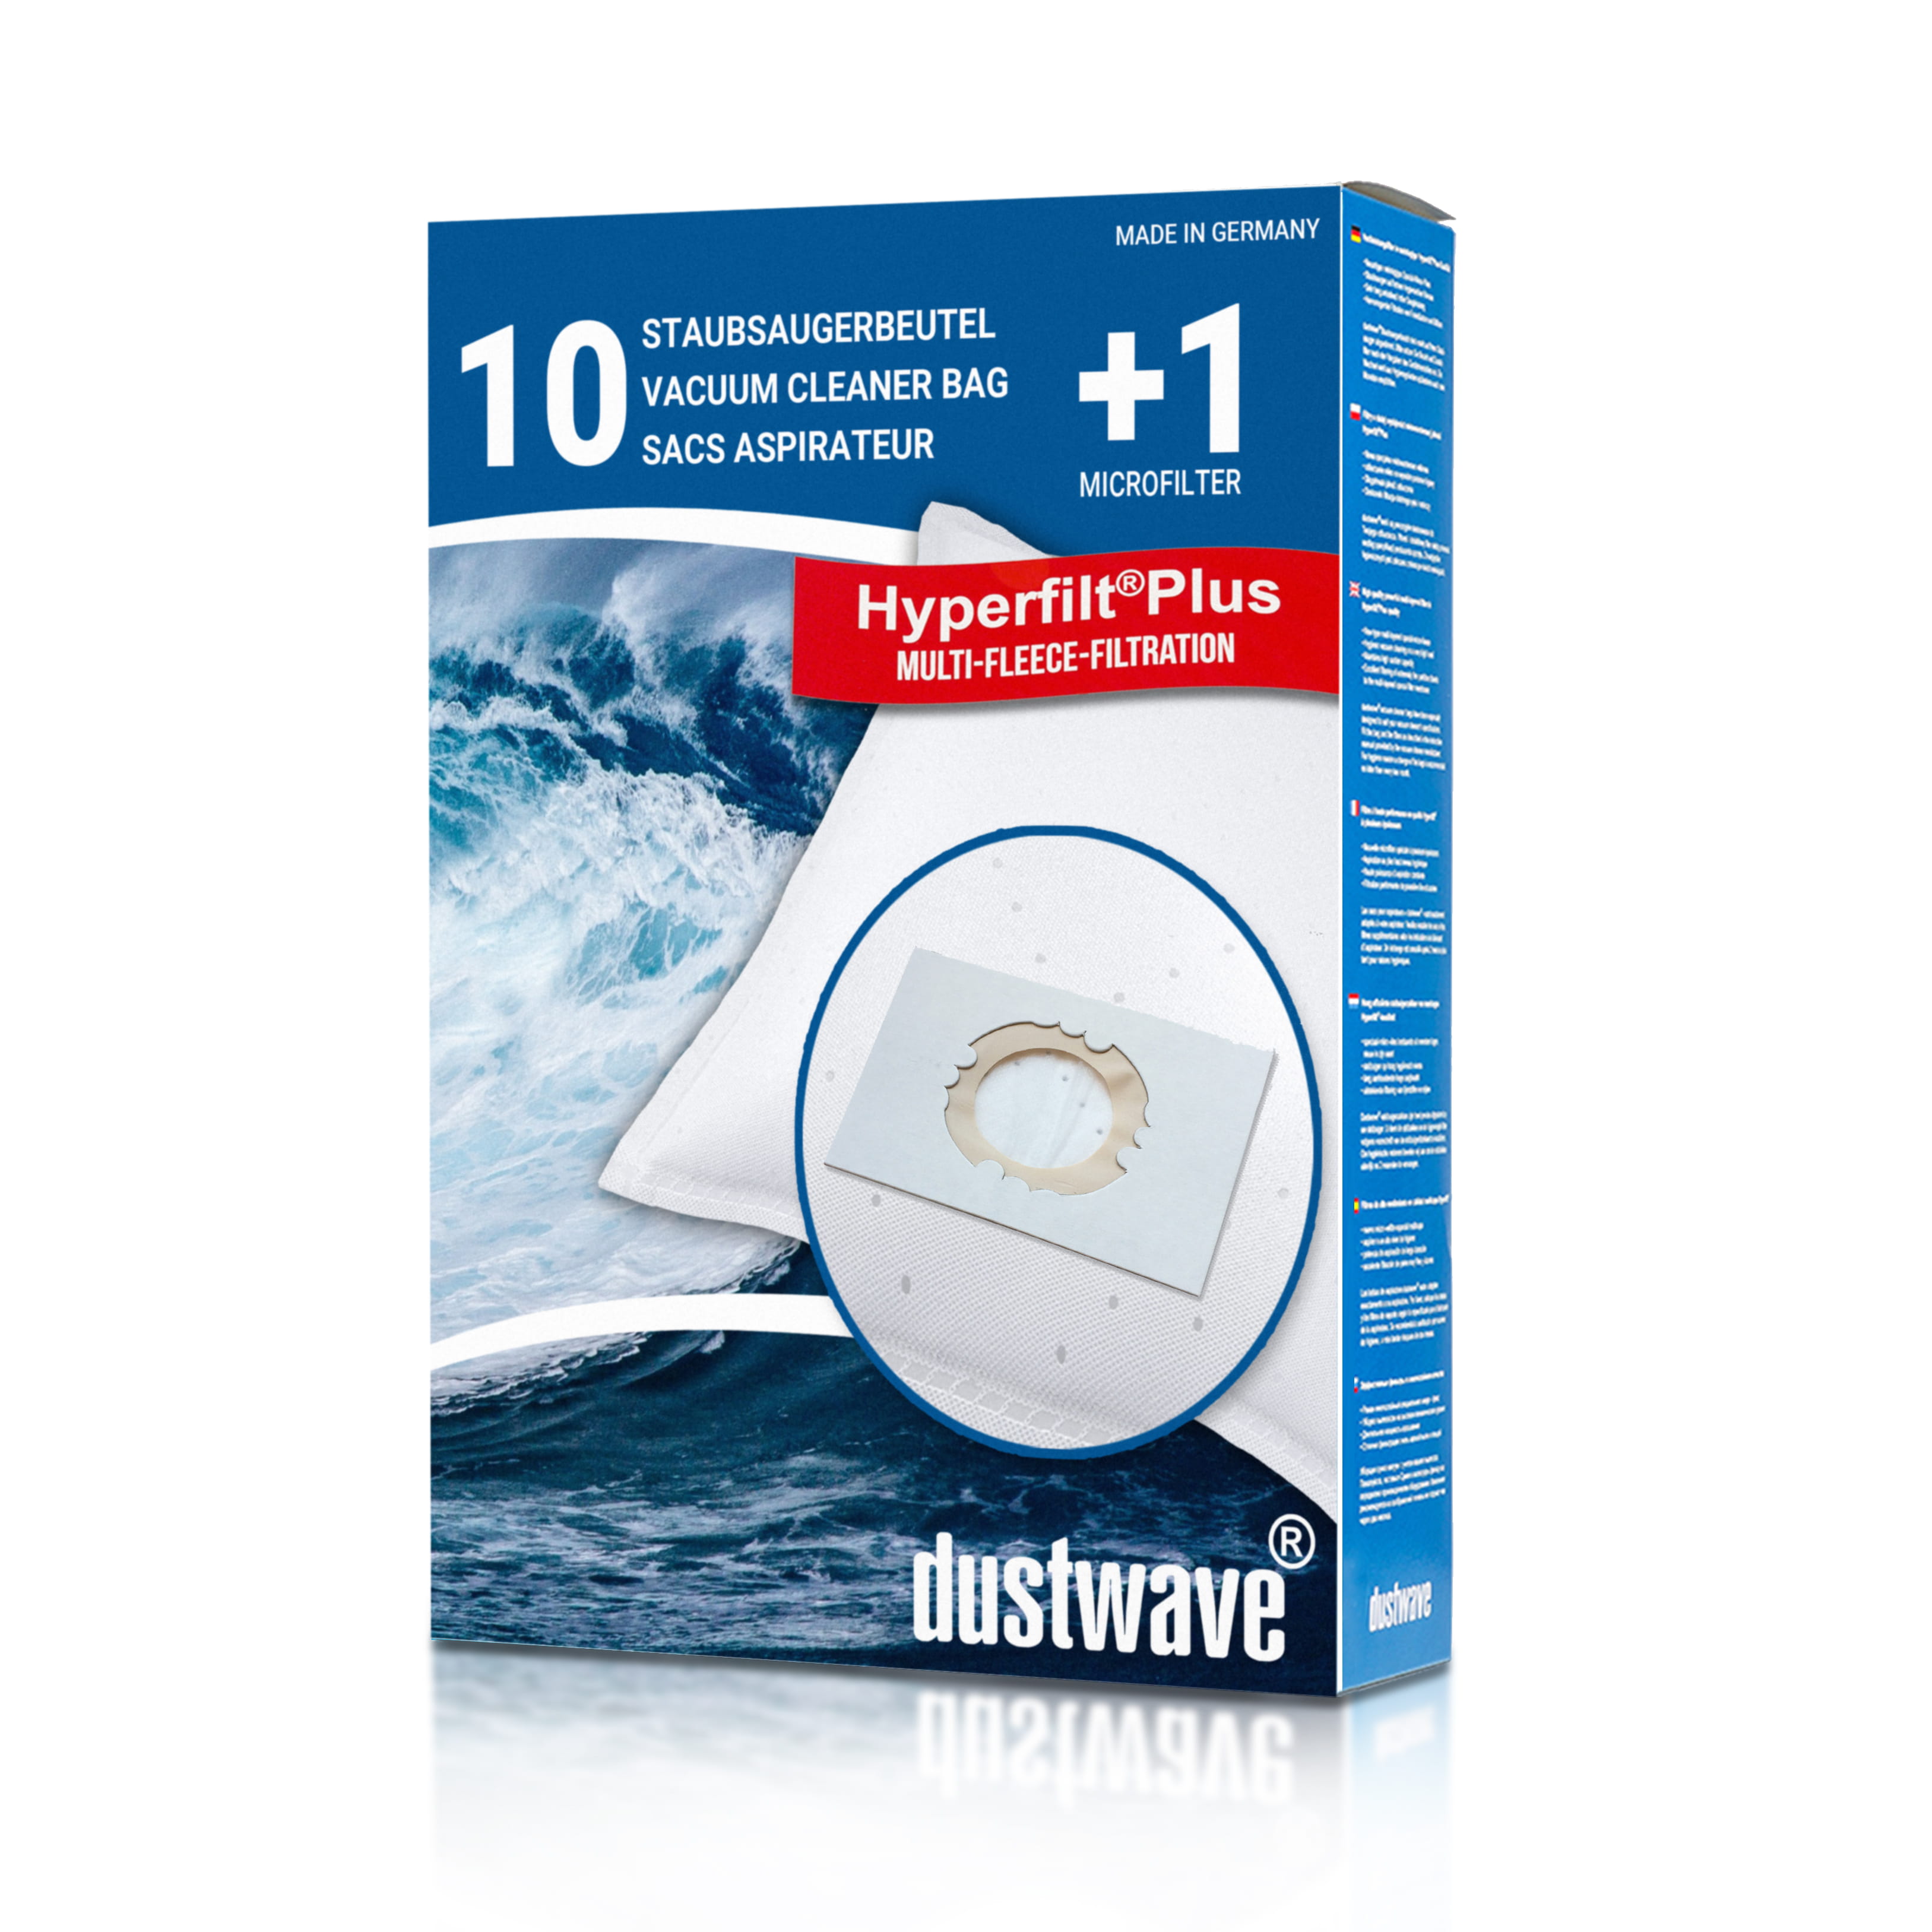 Dustwave® 10 Staubsaugerbeutel für Columbus SW 30 P Kesselsauger (30 Liter) - hocheffizient mit Hygieneverschluss - Made in Germany